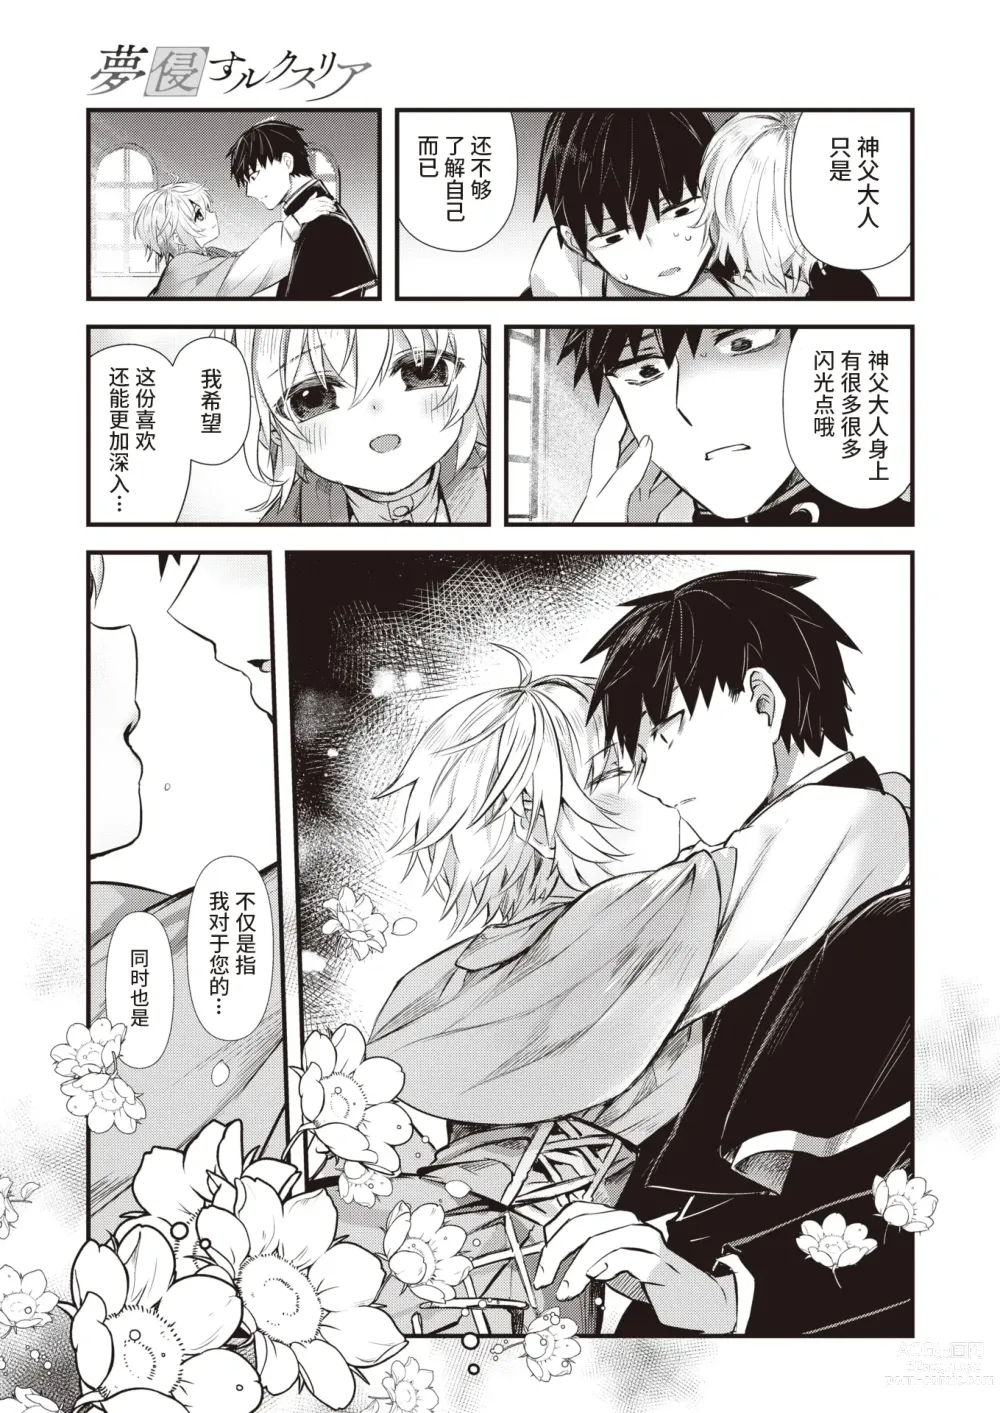 Page 9 of manga 侵入梦境的淫欲 后篇